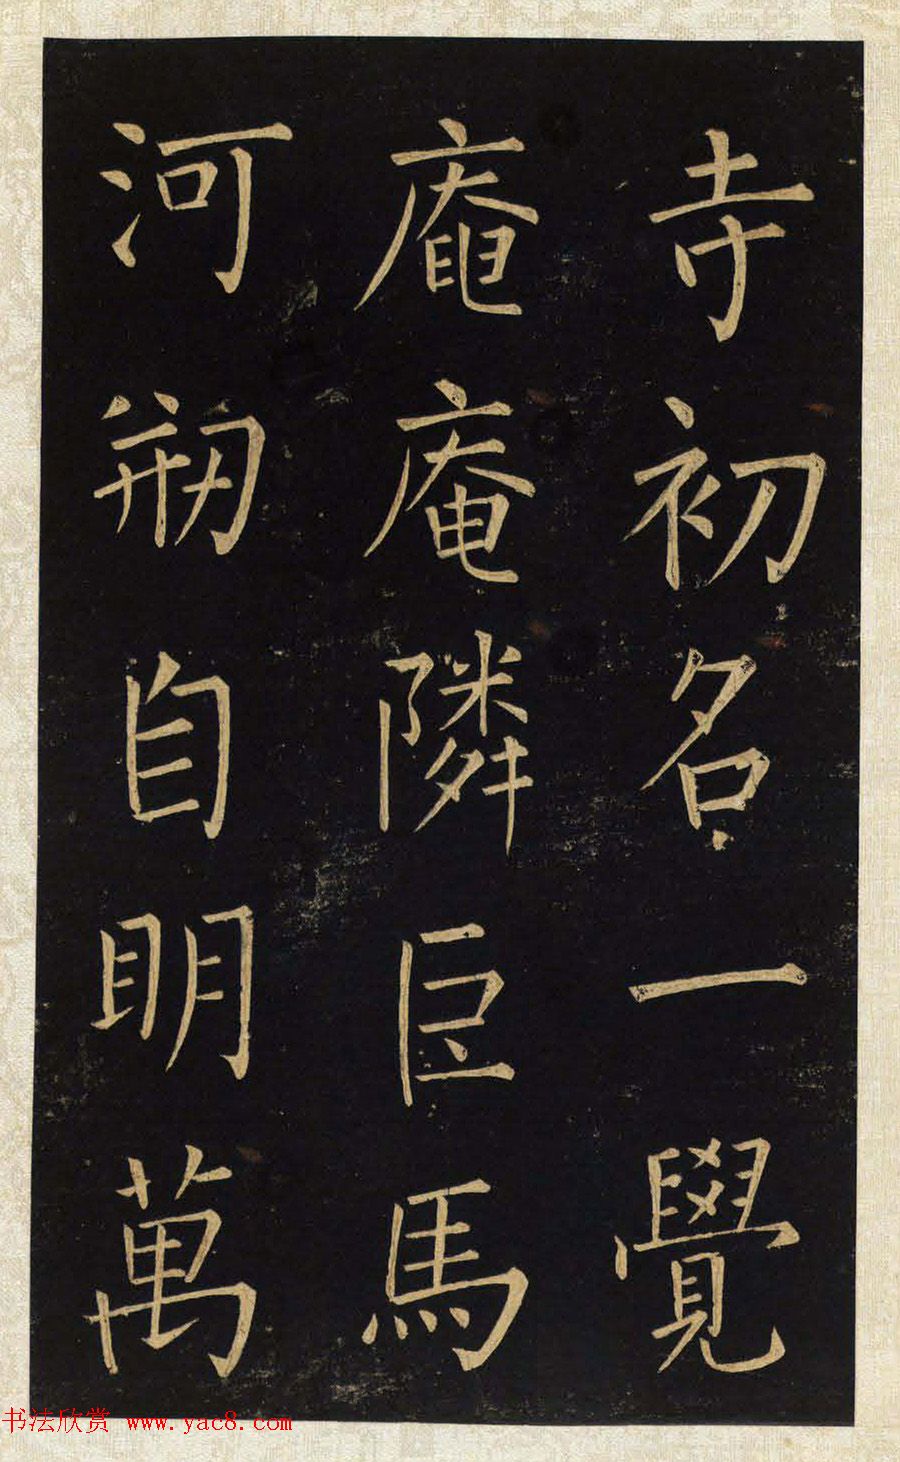 王铎唯一传世的柳体楷书《延寿寺碑》